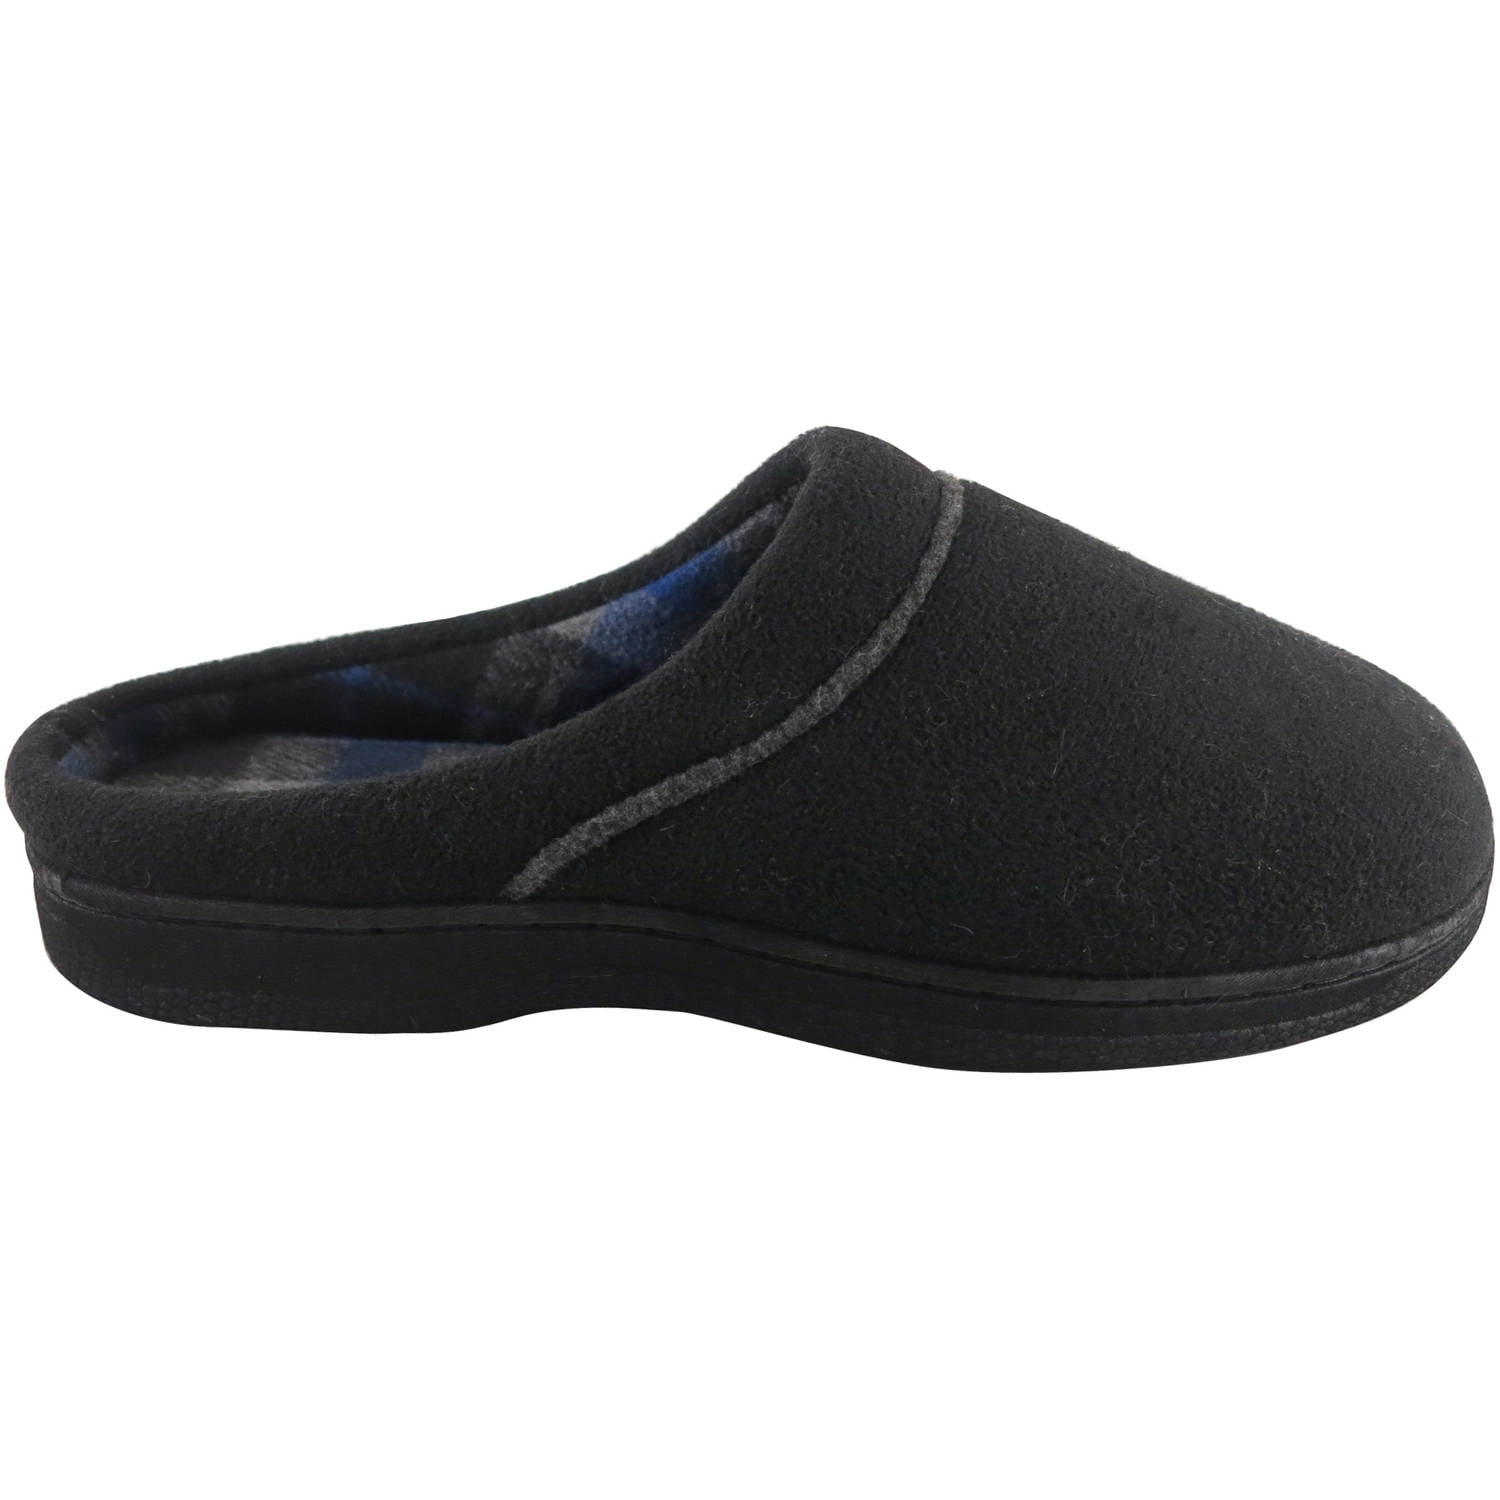 men's clog slippers